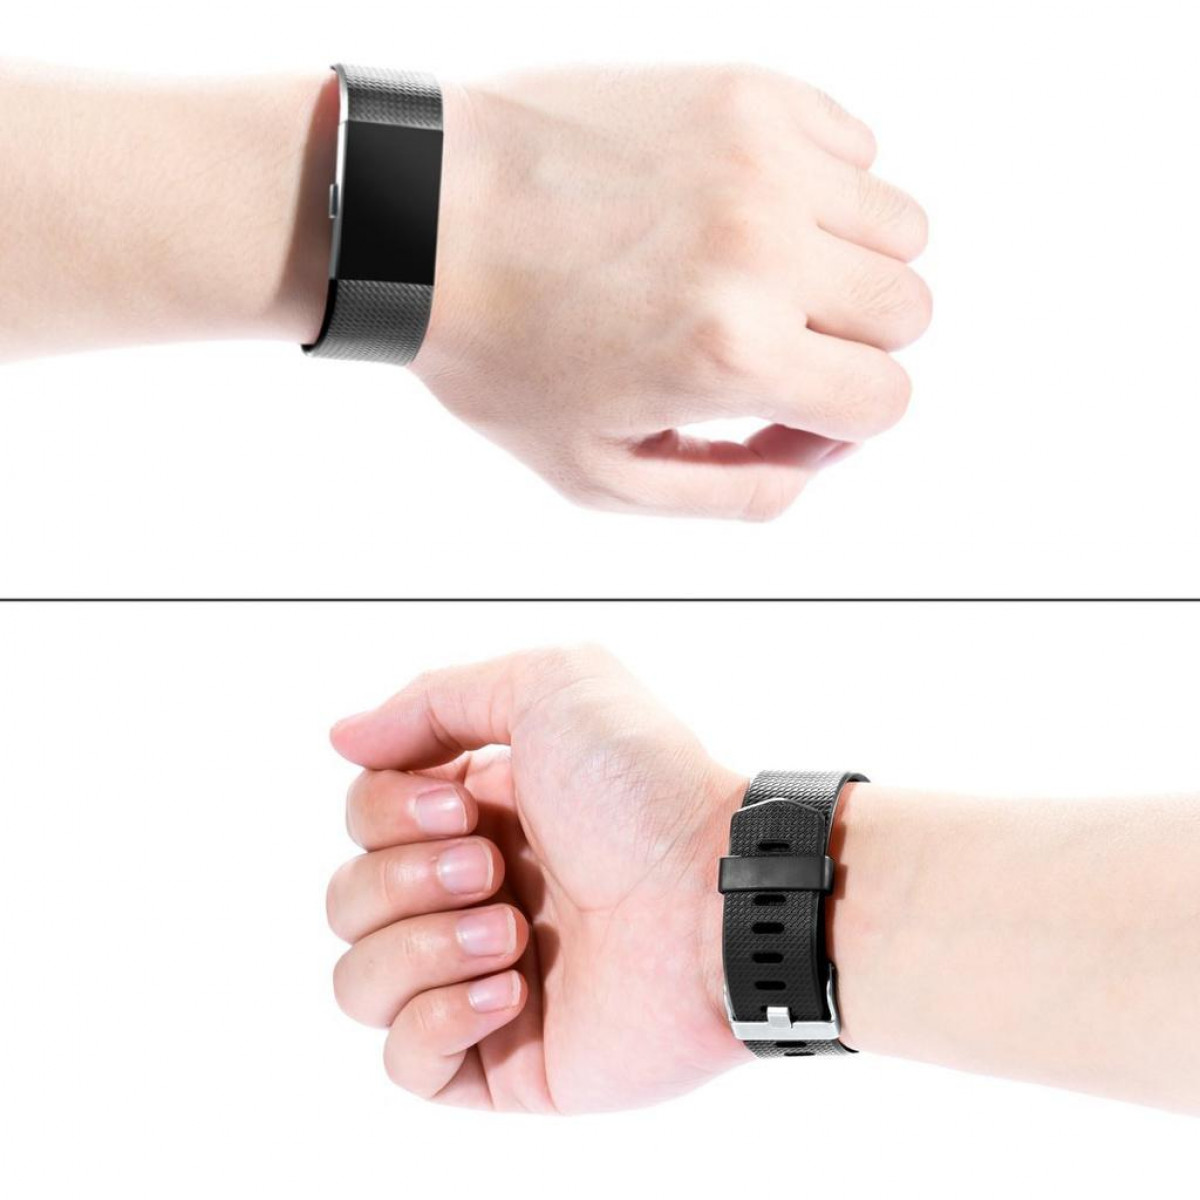 INF Fitbit Charge (S), schwarz/grau/weiß Armband, Charge Armband 3er-Pack (S), schwarz/grau/weiß Fitbit, 2 2